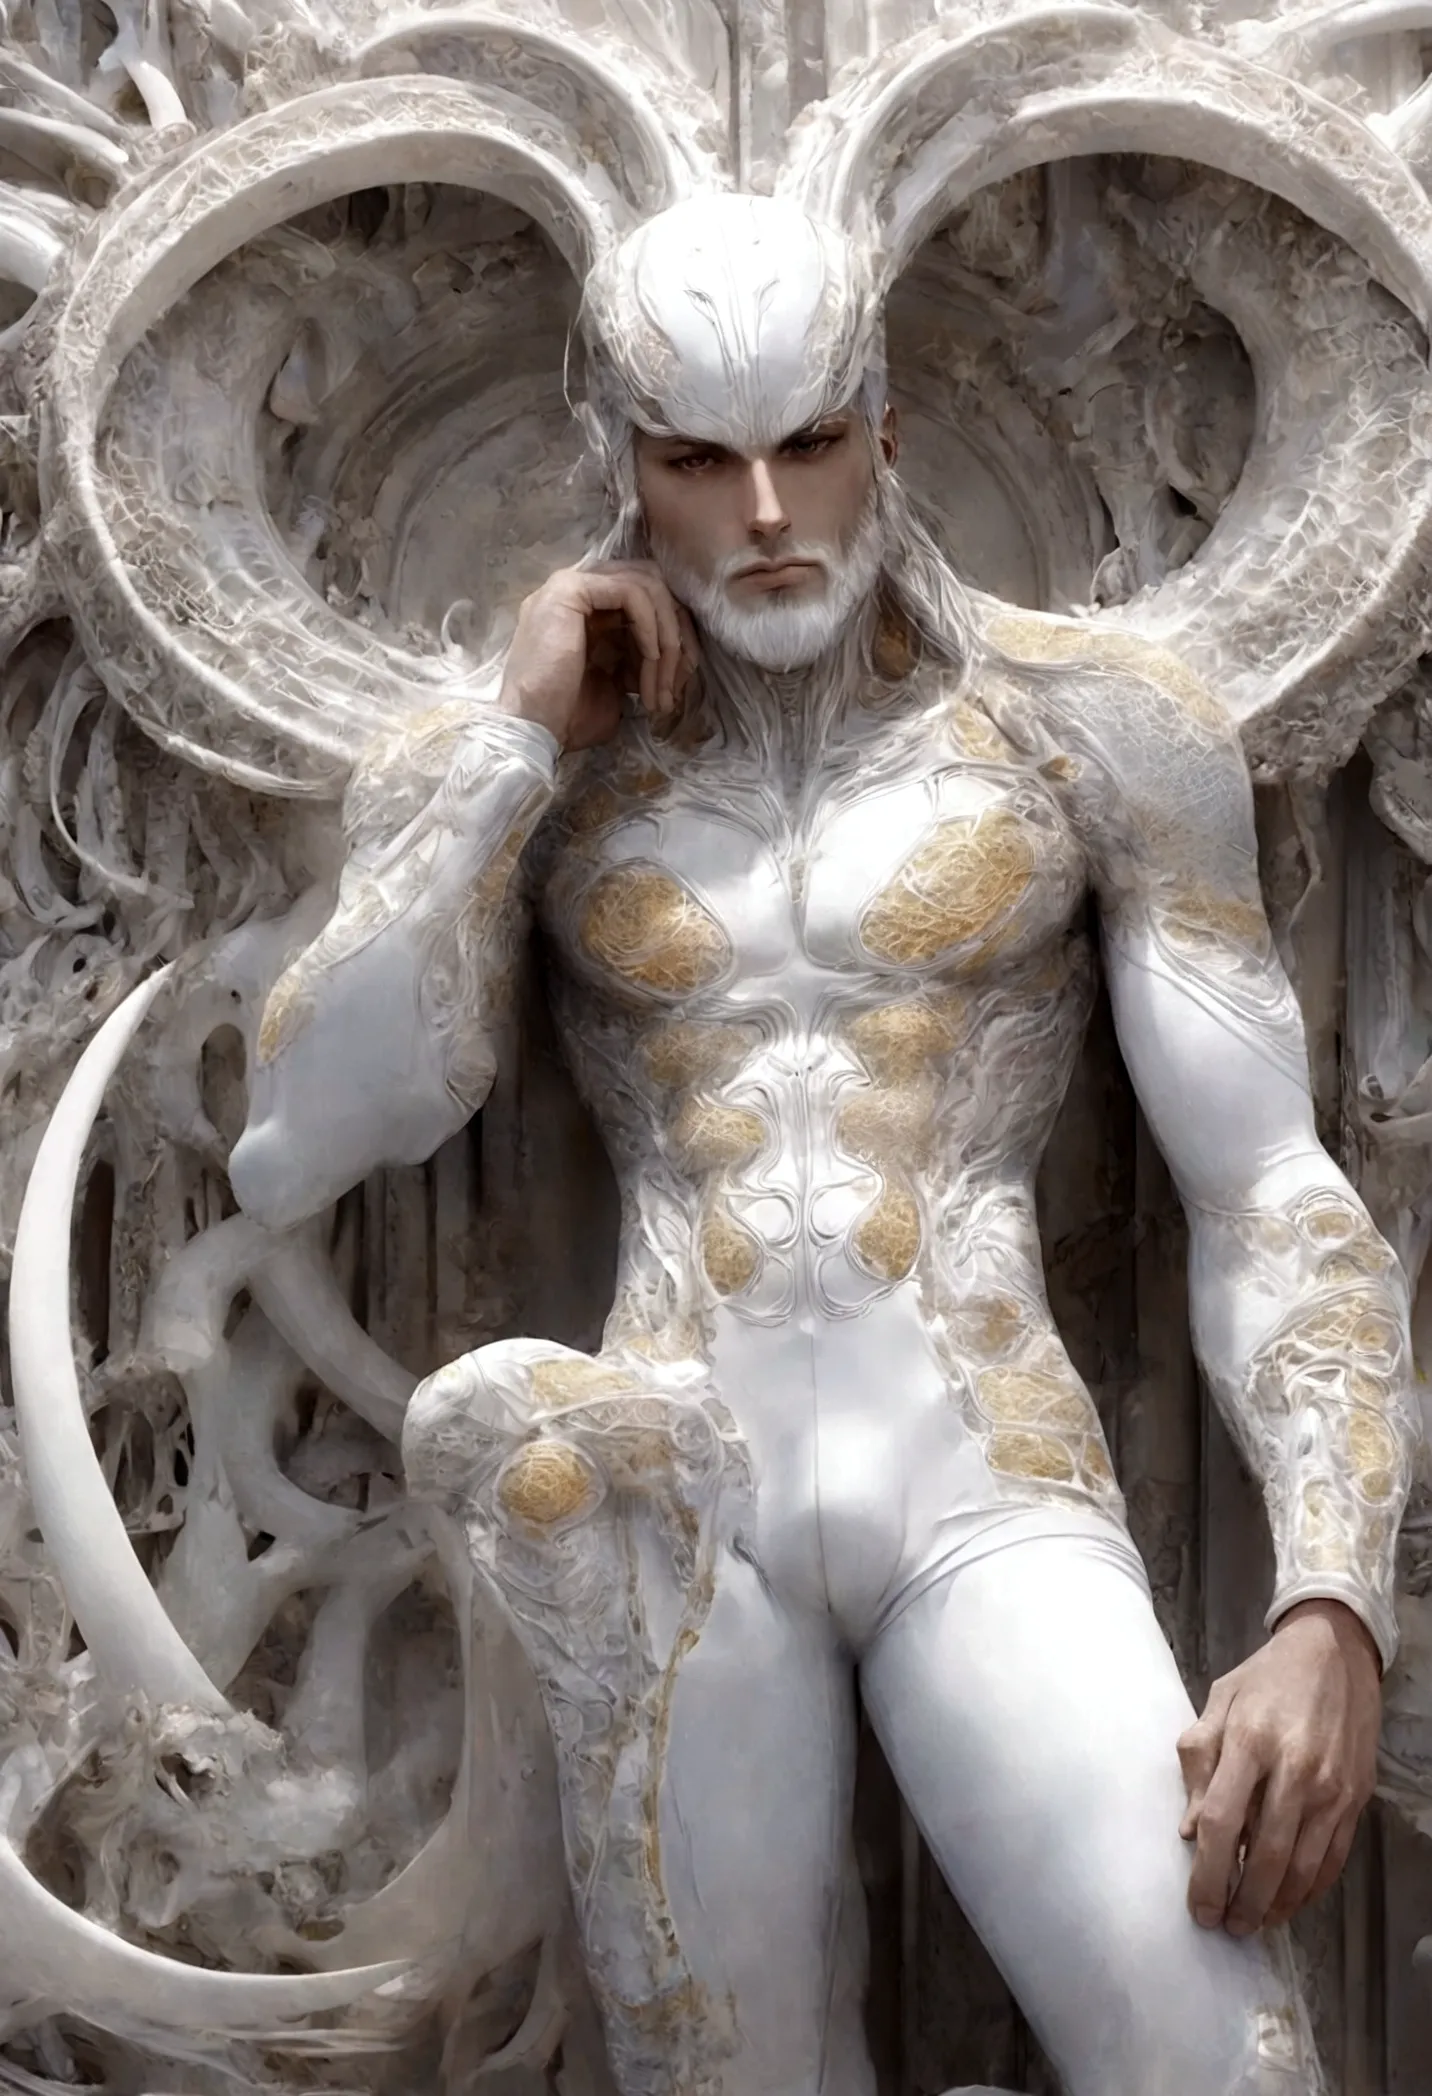 Crie uma obra de arte em 3D de um homem celestial usando um roupa branca adornado com (((detalhes intrincados))). A obra deve in...